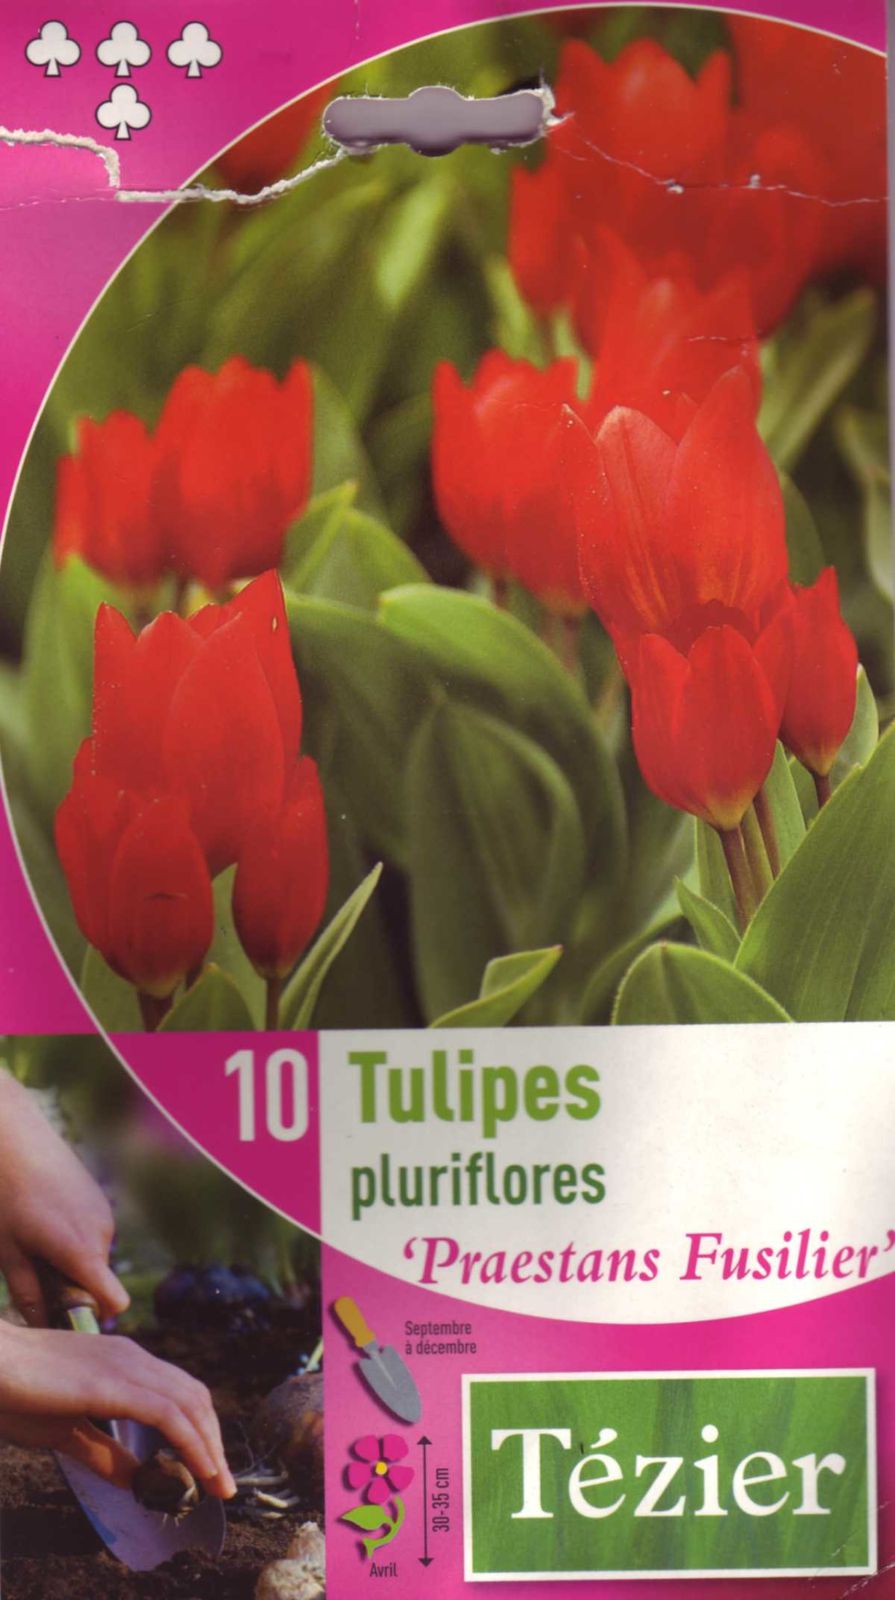 Tulipes_pluriflores-Praestans_Fusilier.j